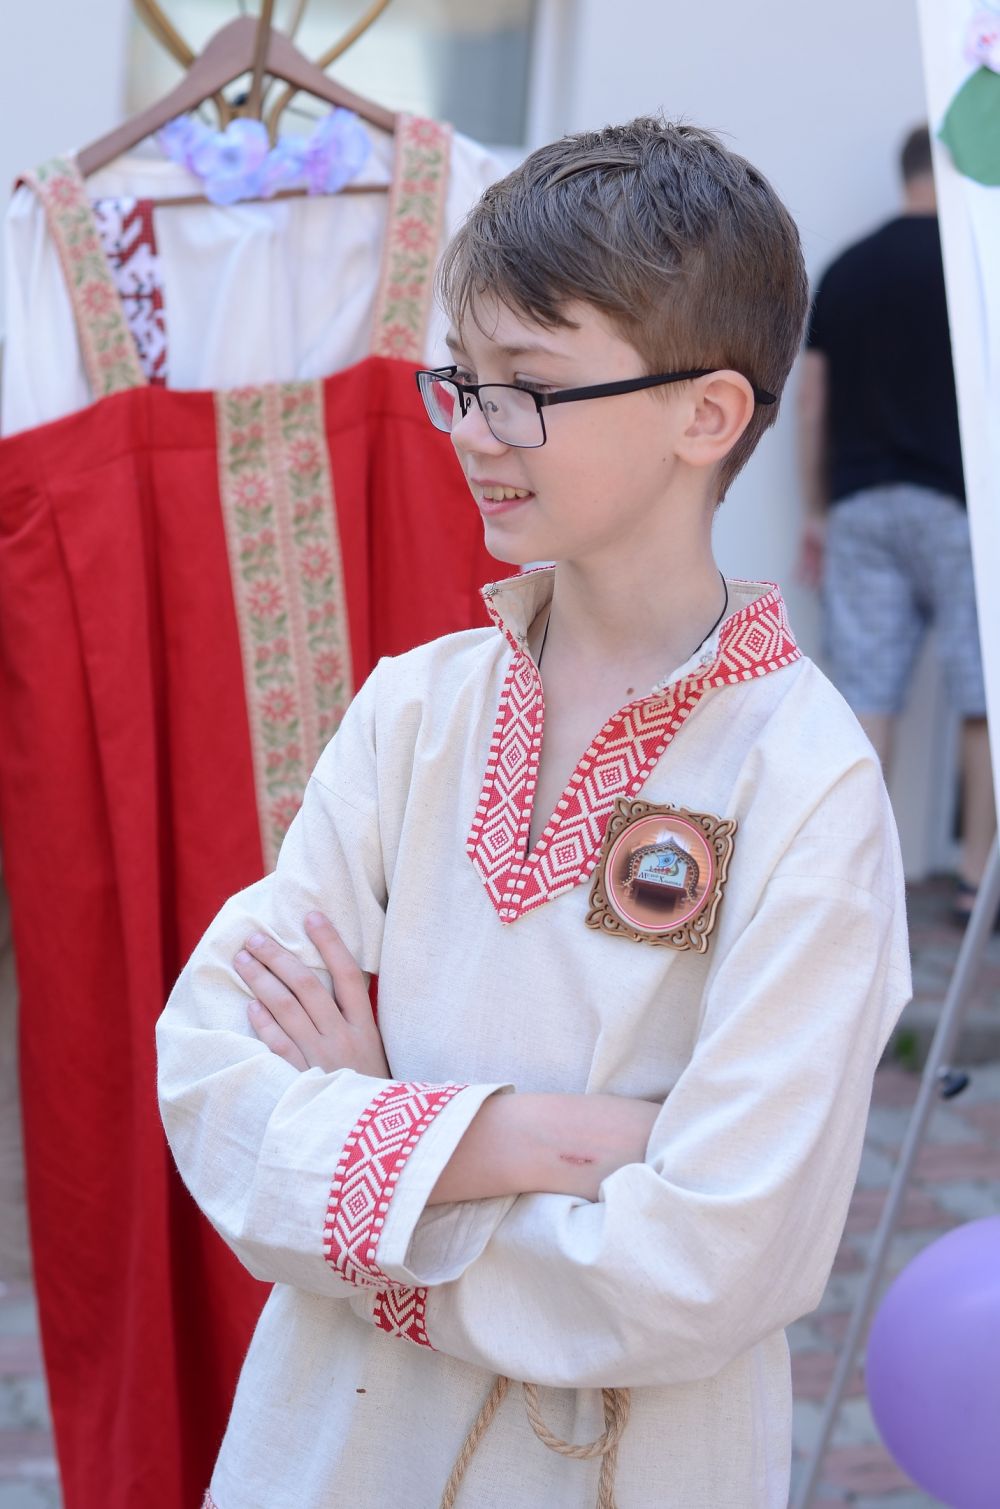 10-летний Володя Николаенко уже полгода водит в музее экскурсии. Опытные экскурсоводы называют его "наш младший научный сотрудник".